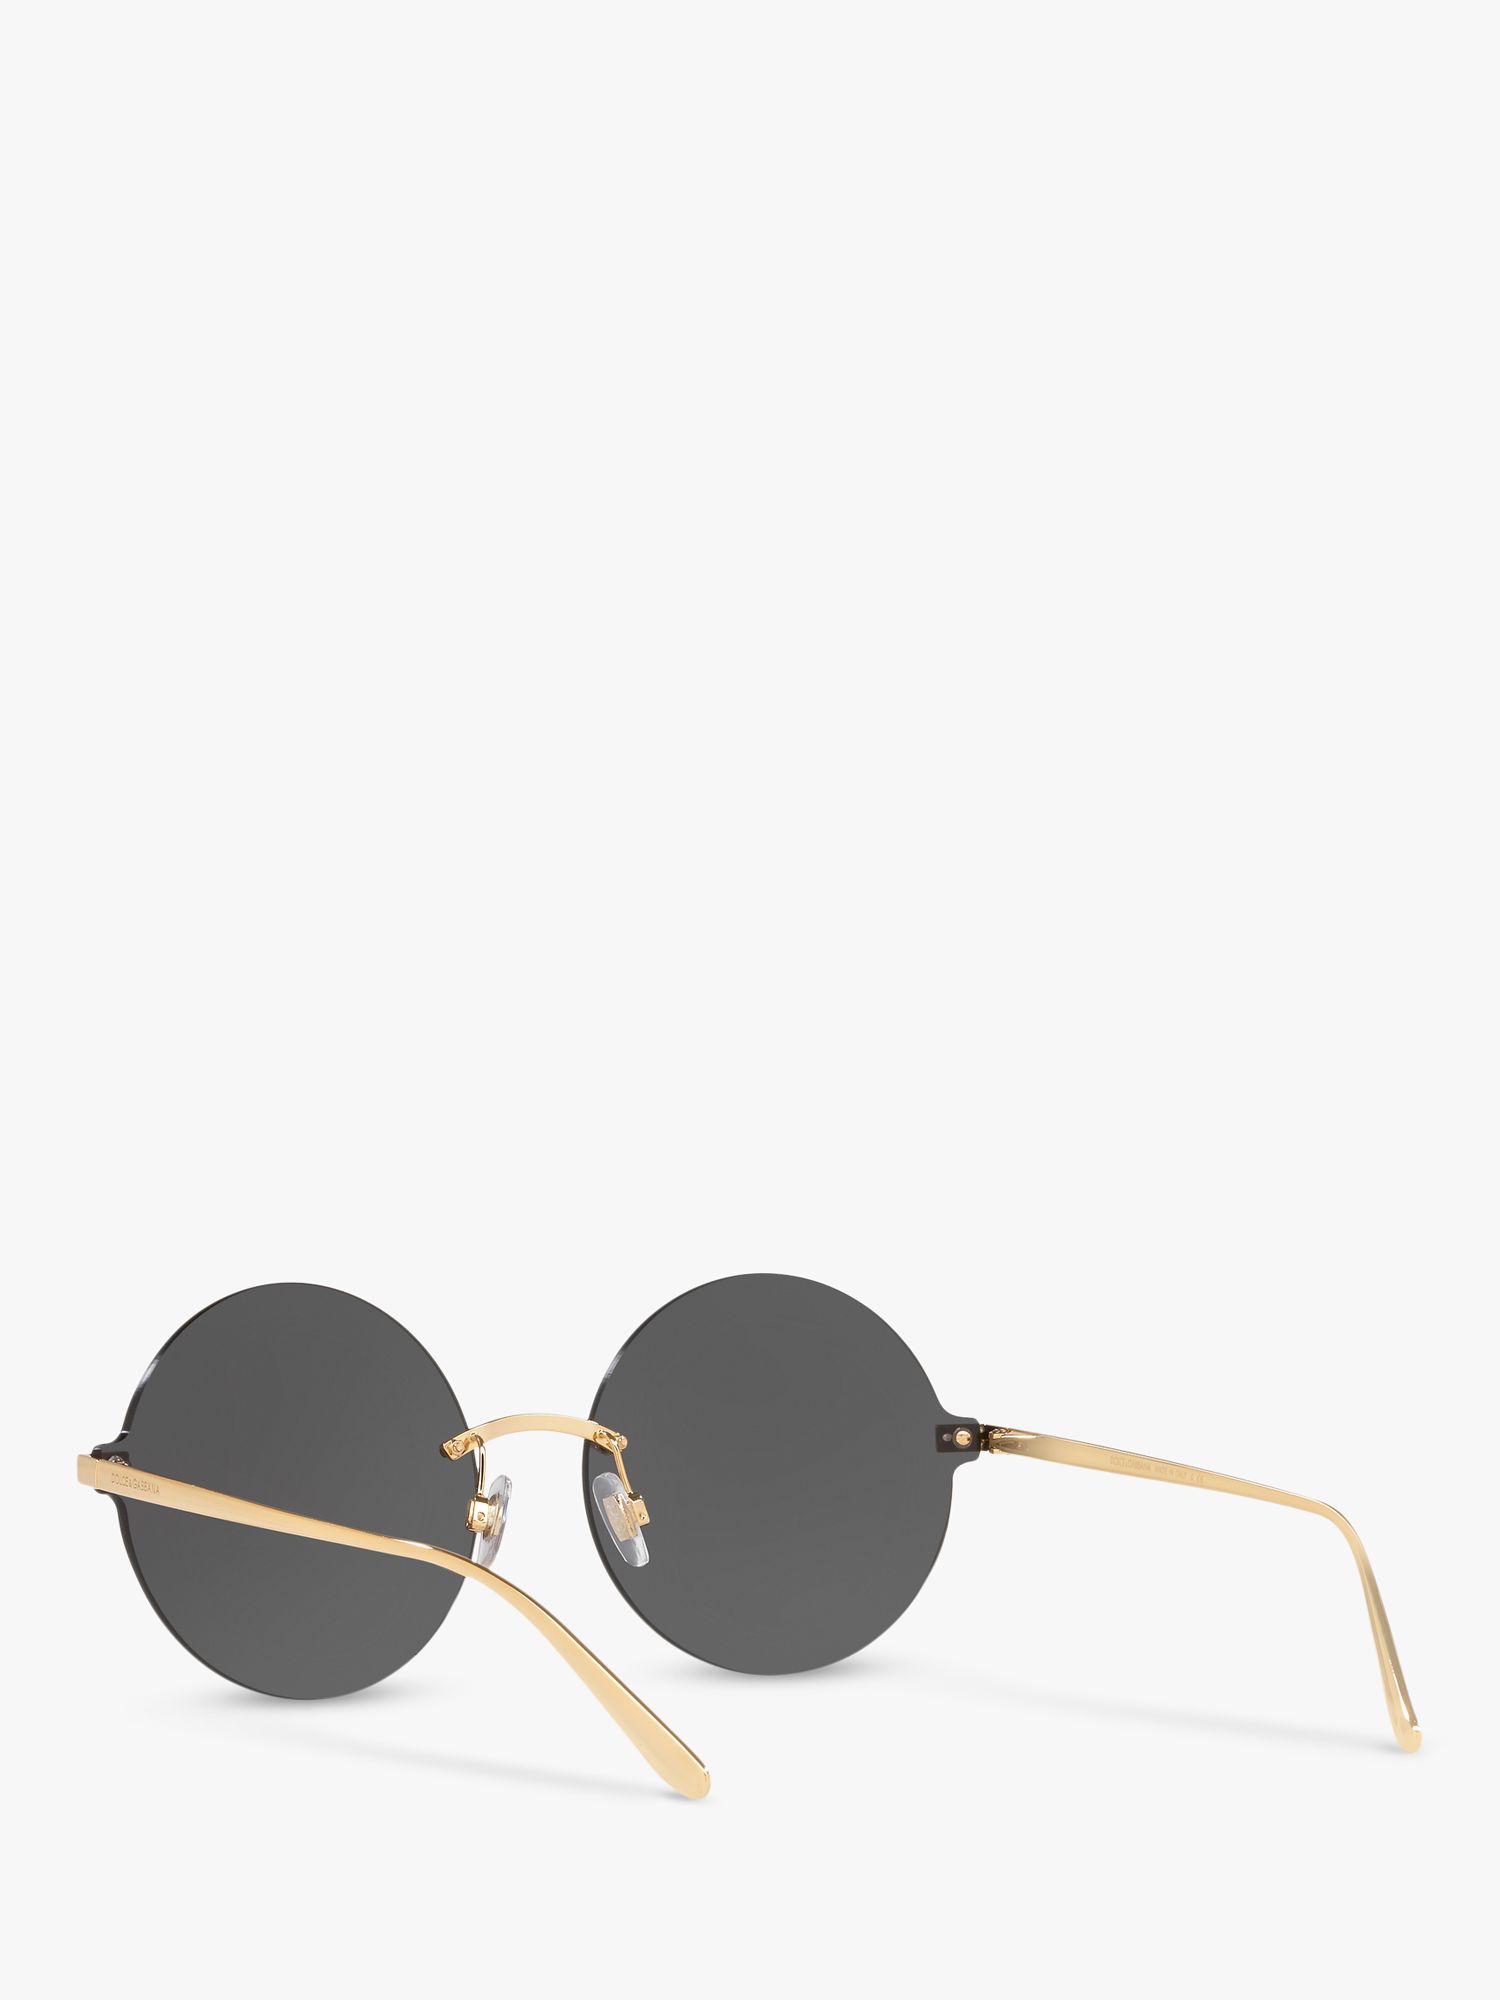 Dolce & Gabbana DG2228 Women's Polka Dot Round Sunglasses, Gold/Black